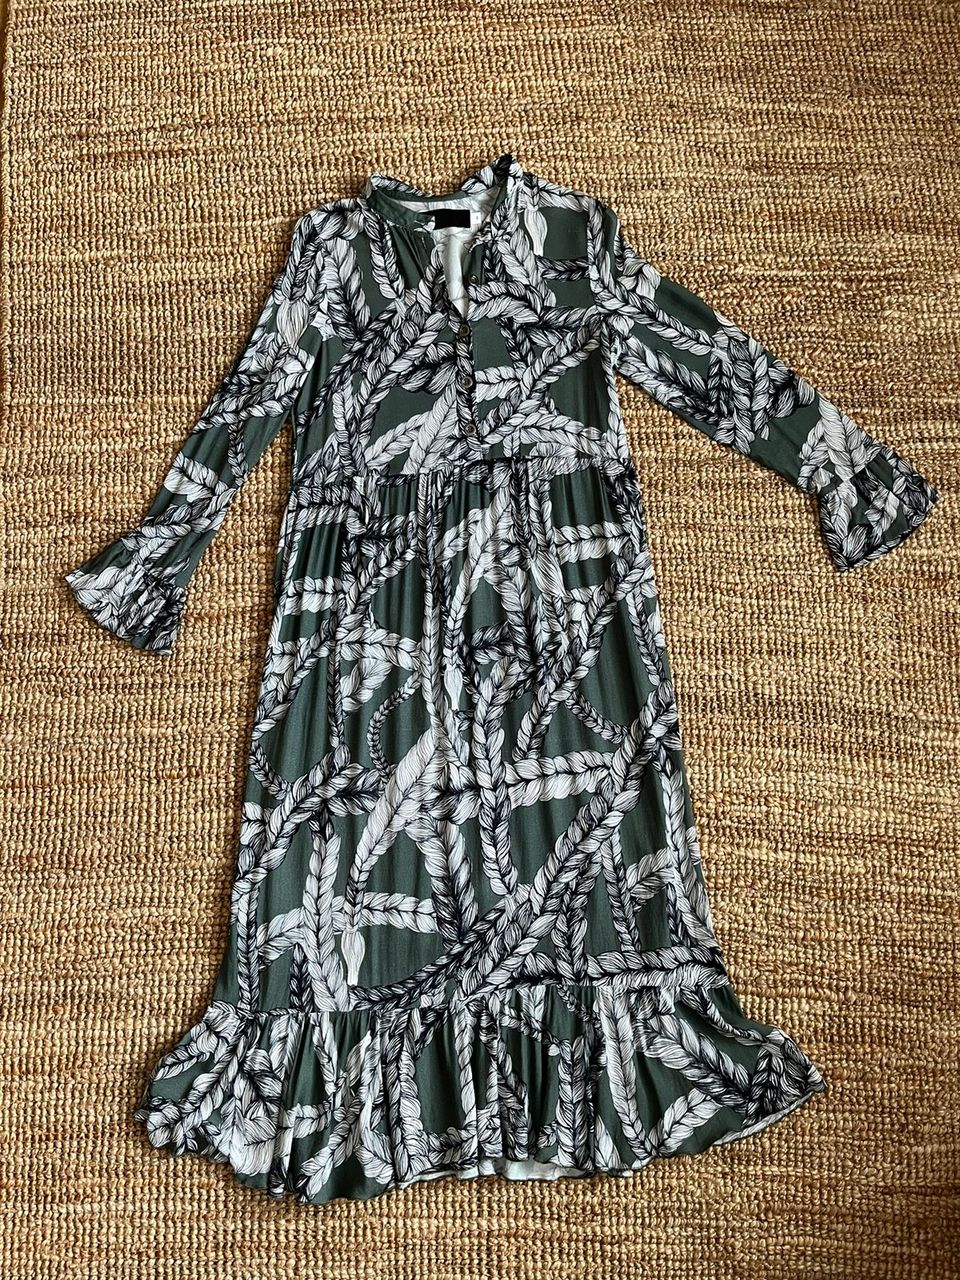 Vimma Tuuva-mekko salvianvihreä letti, koko M